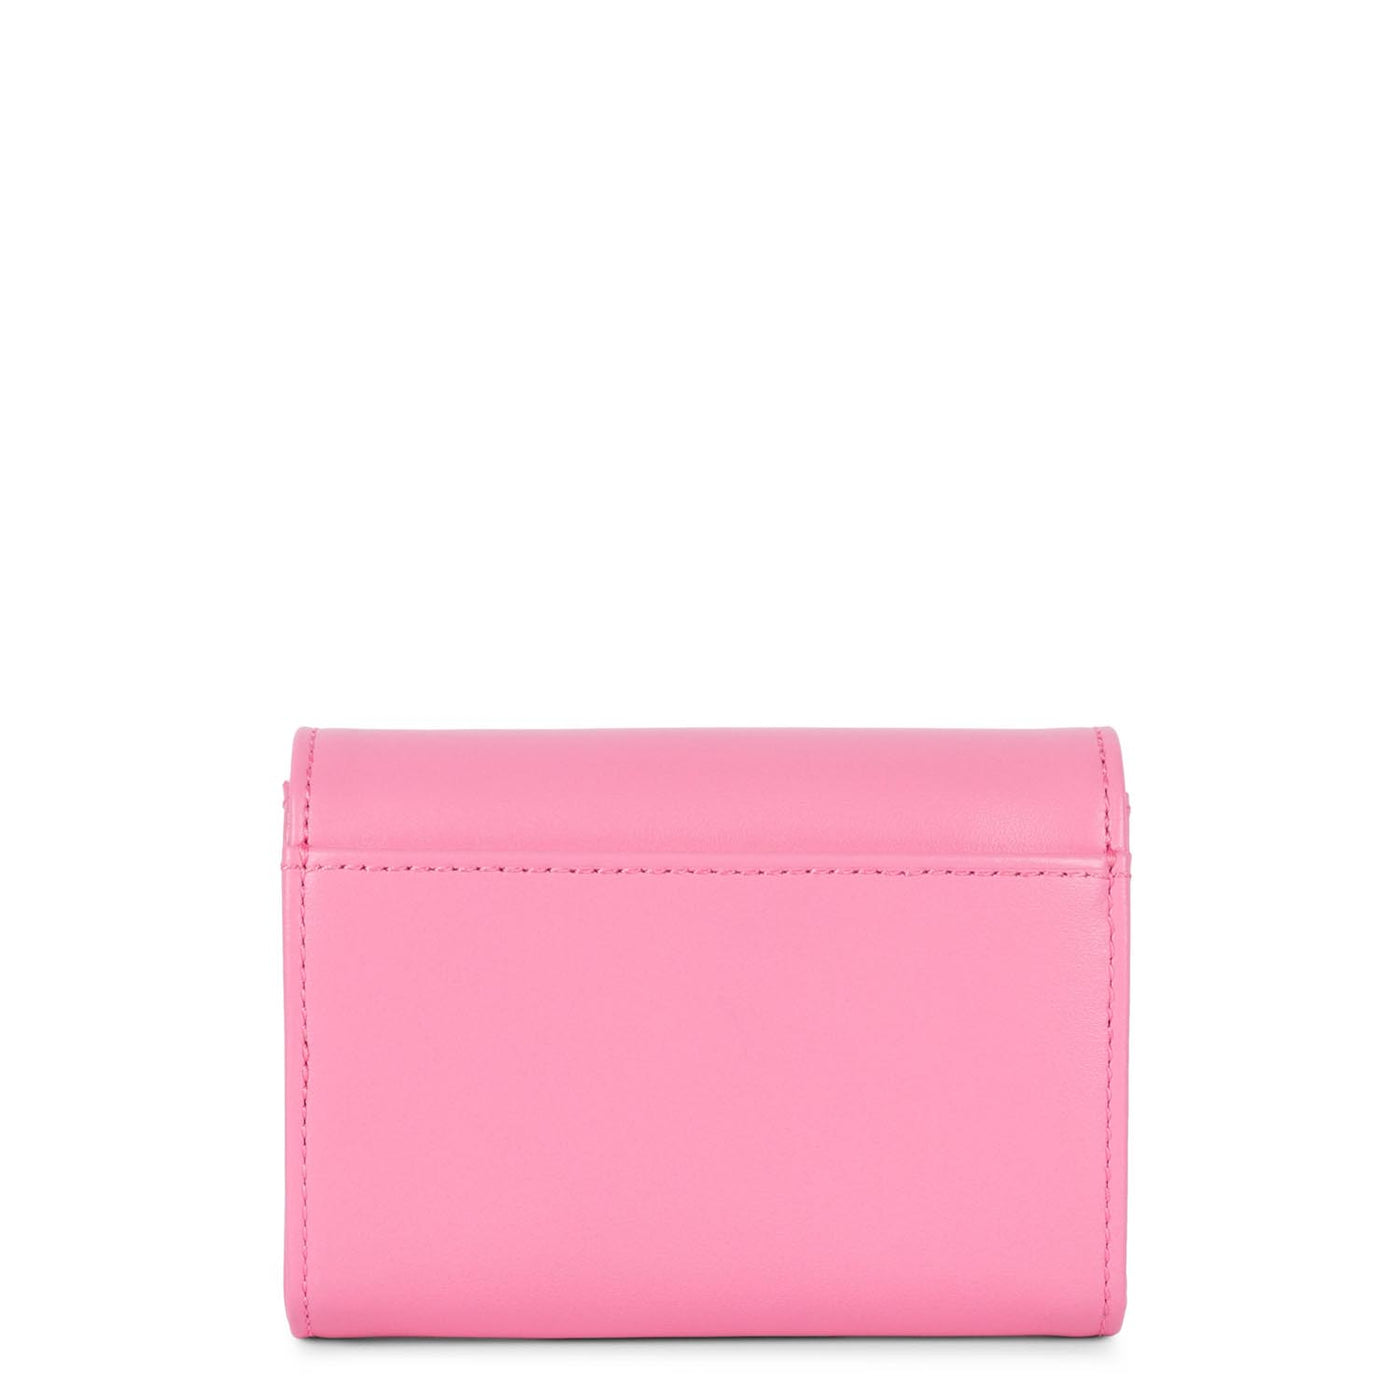 wallet - paris pm #couleur_rose